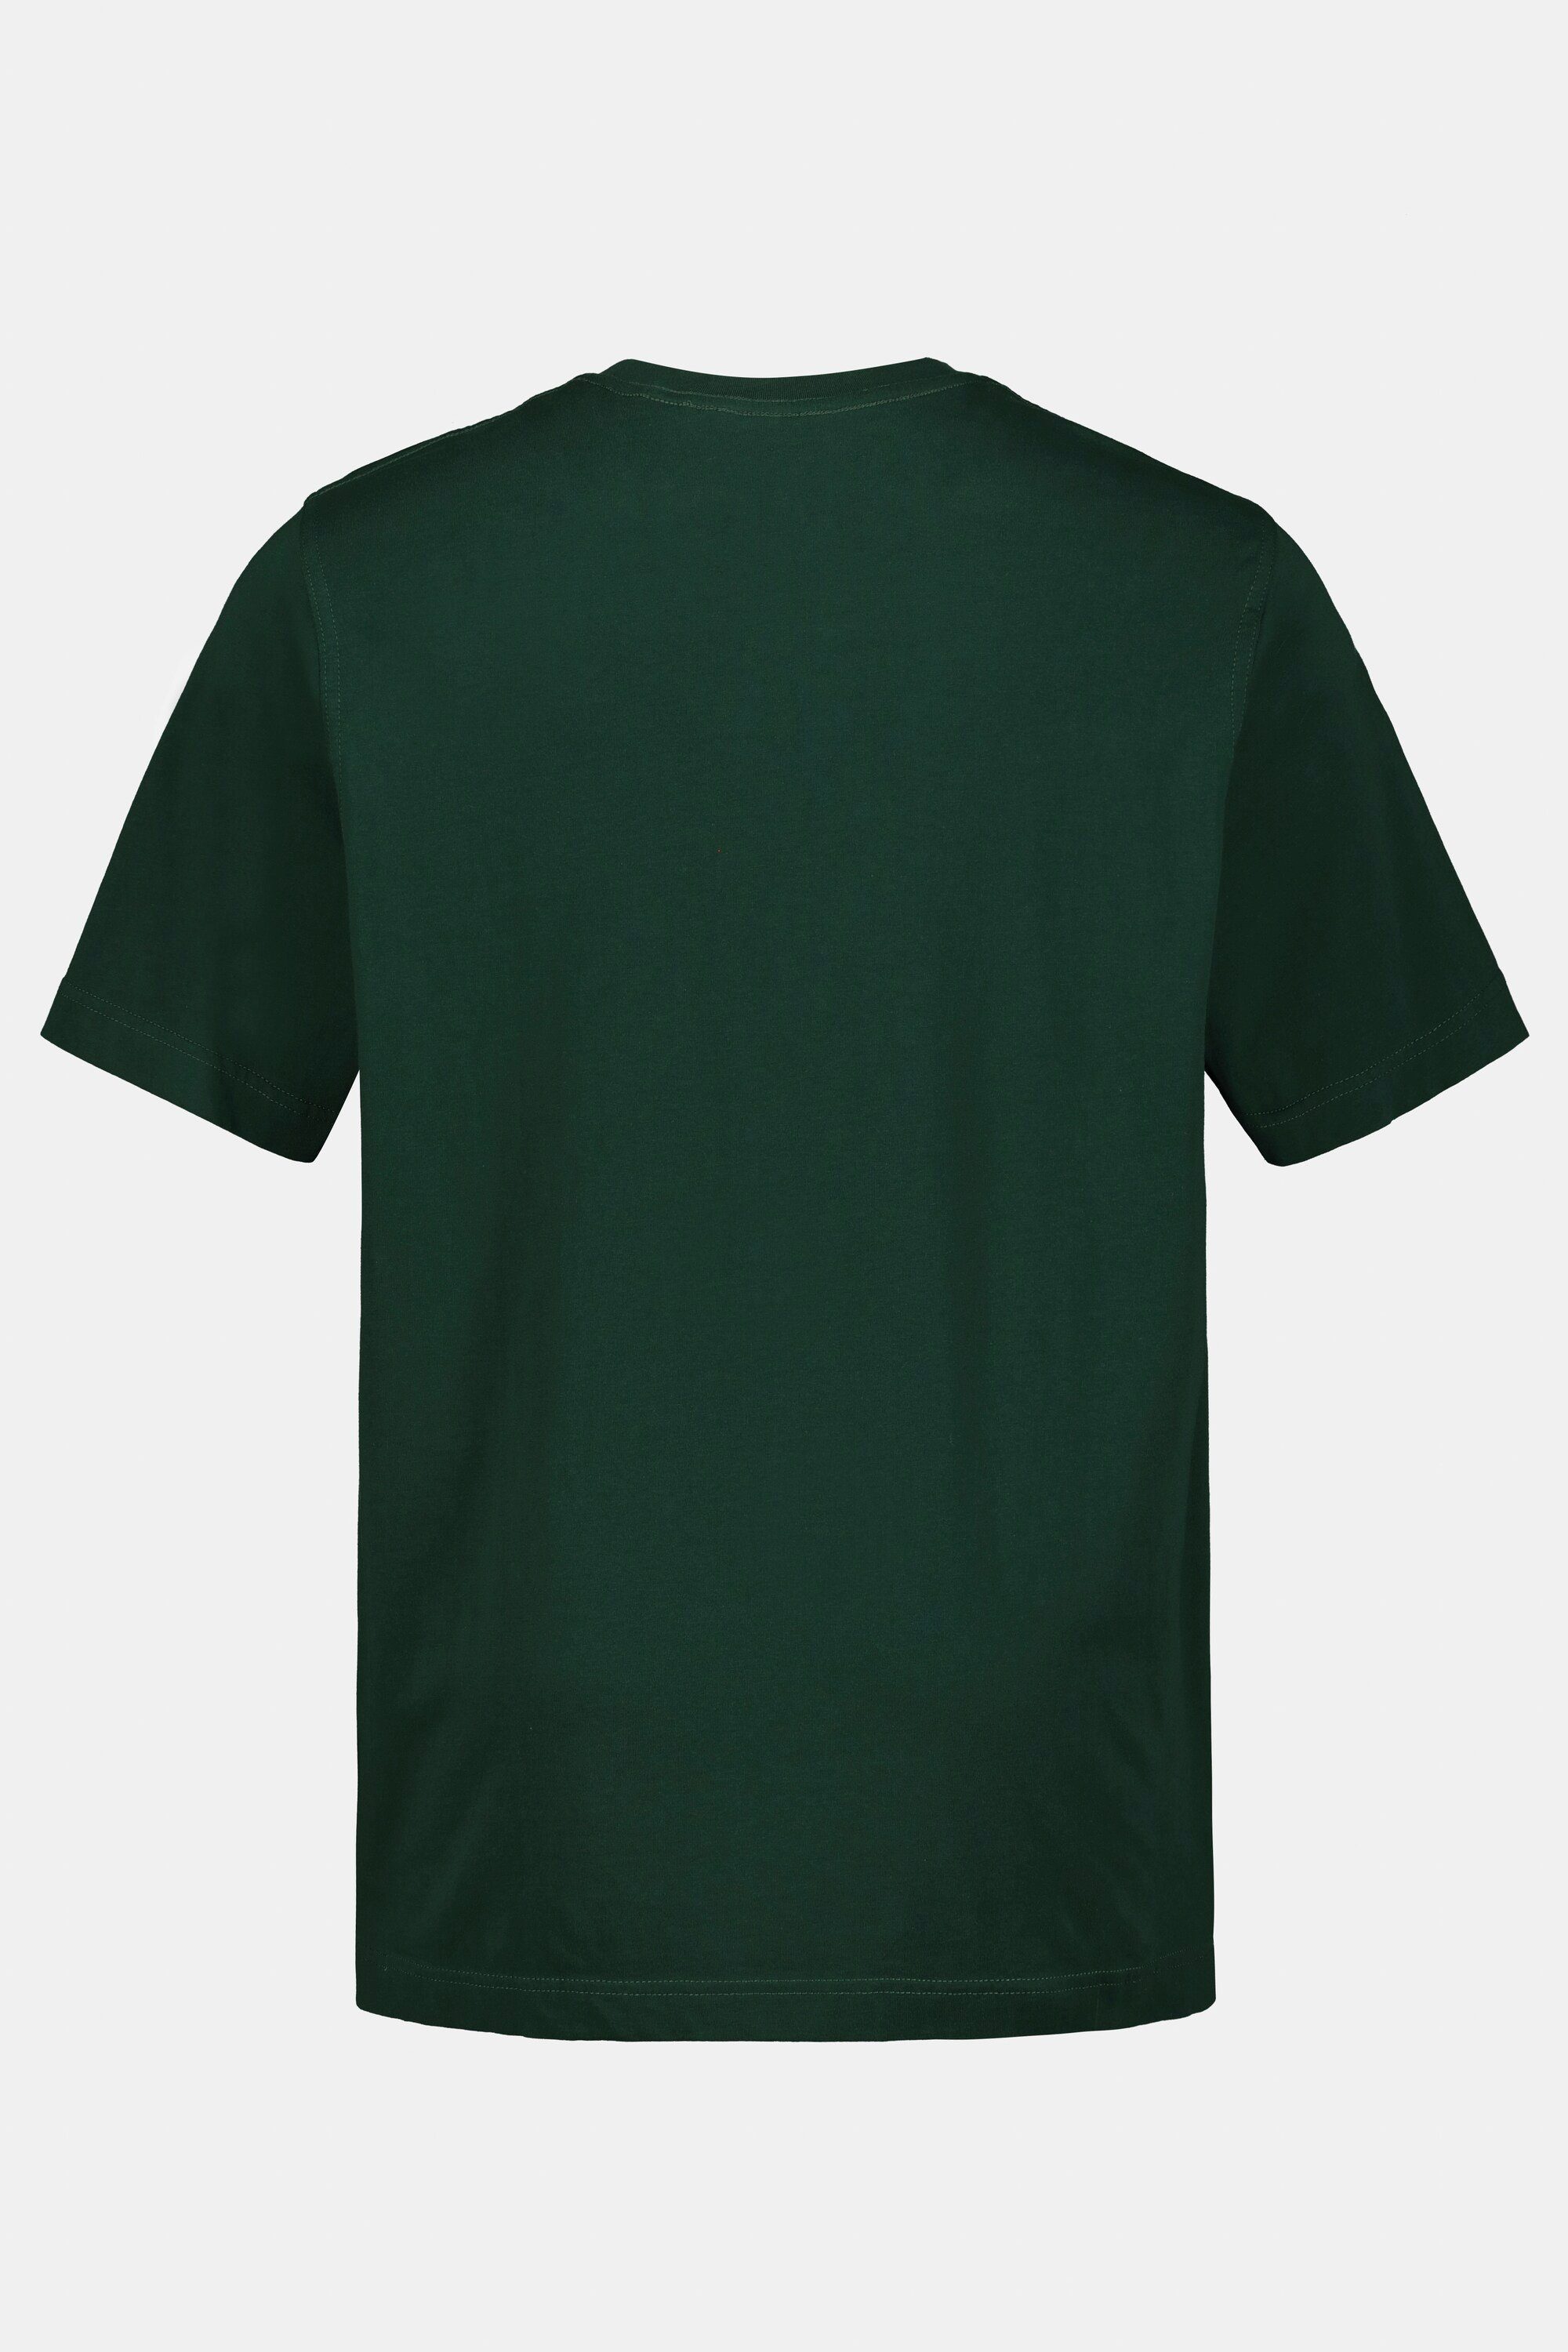 JP1880 T-Shirt T-Shirt Baumwolle Basic 8XL Rundhals bis dunkelgrün gekämmte